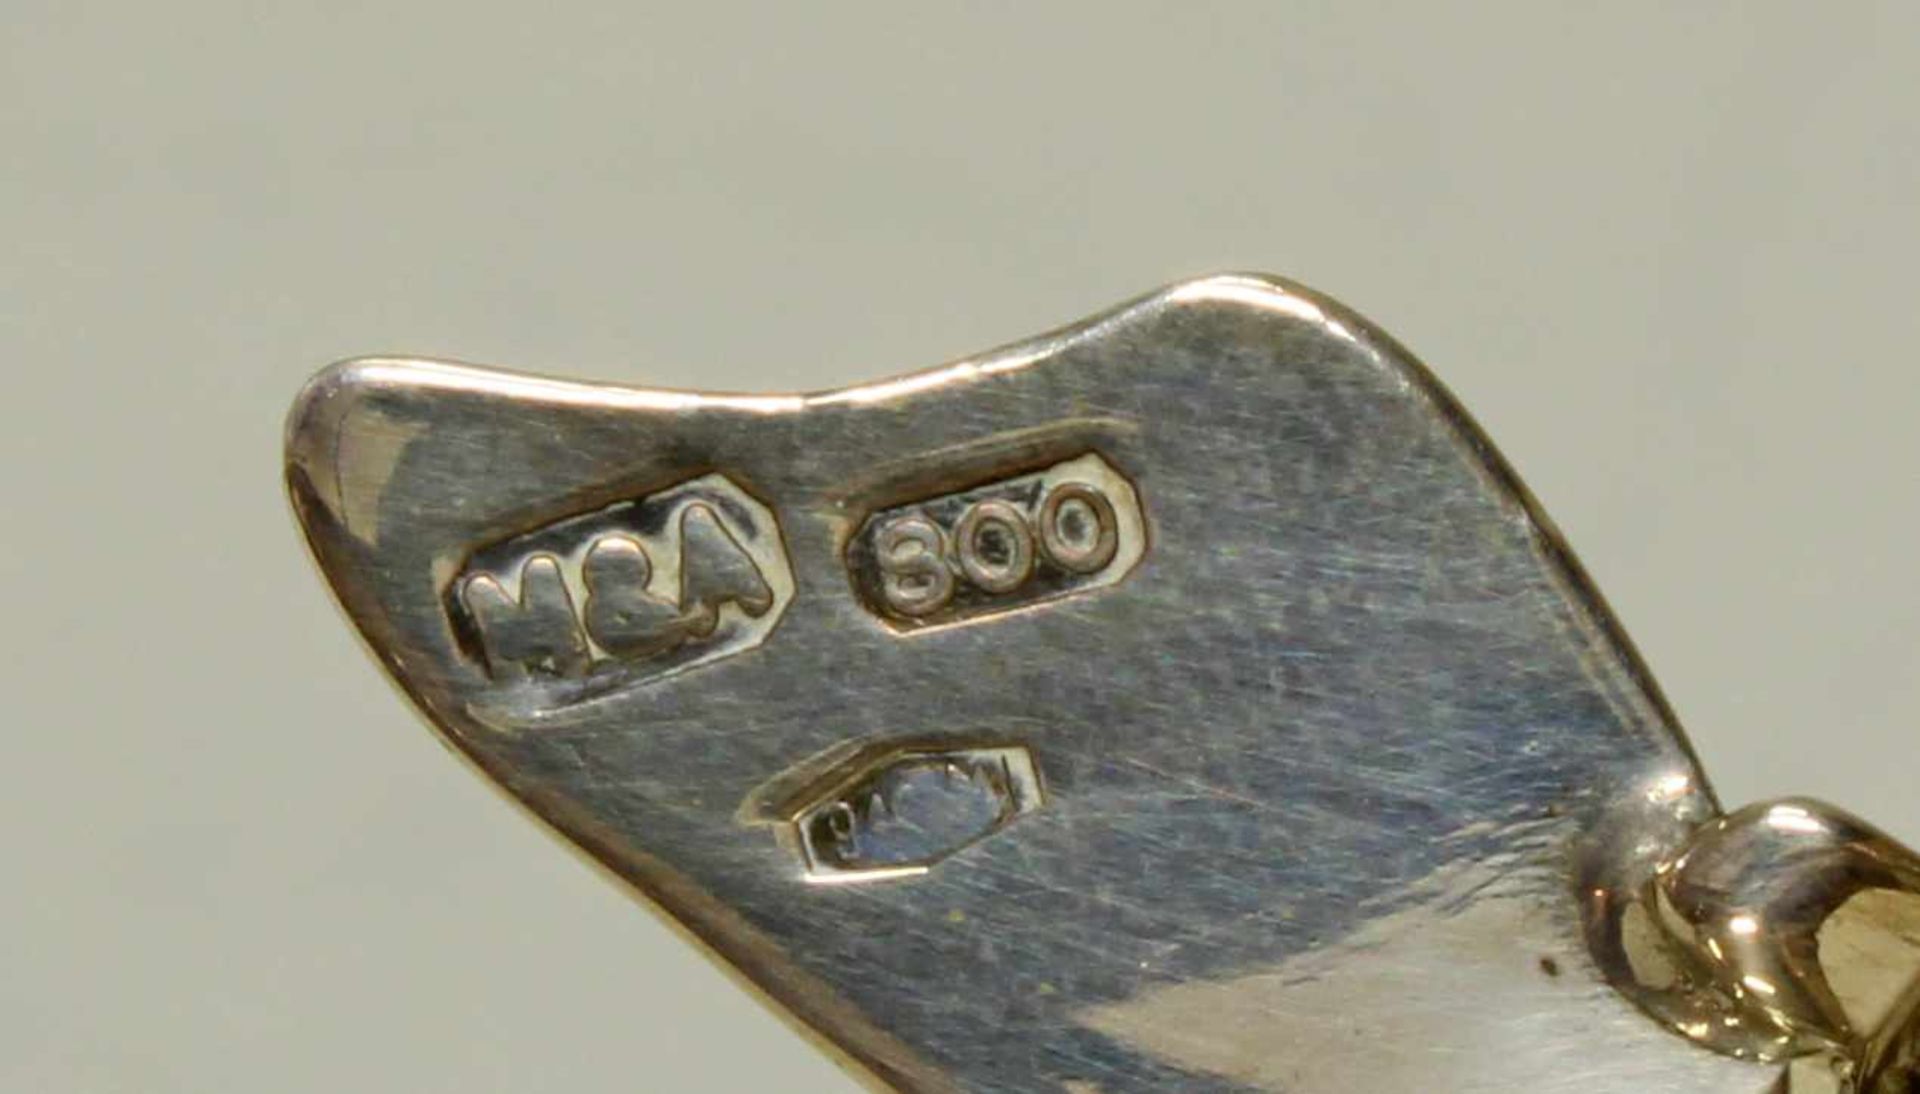 2 Schälchen, "Apfel", "Birne", Silber 800, Italien, je 2 cm hoch, zus. ca. 92 g< - Image 2 of 2